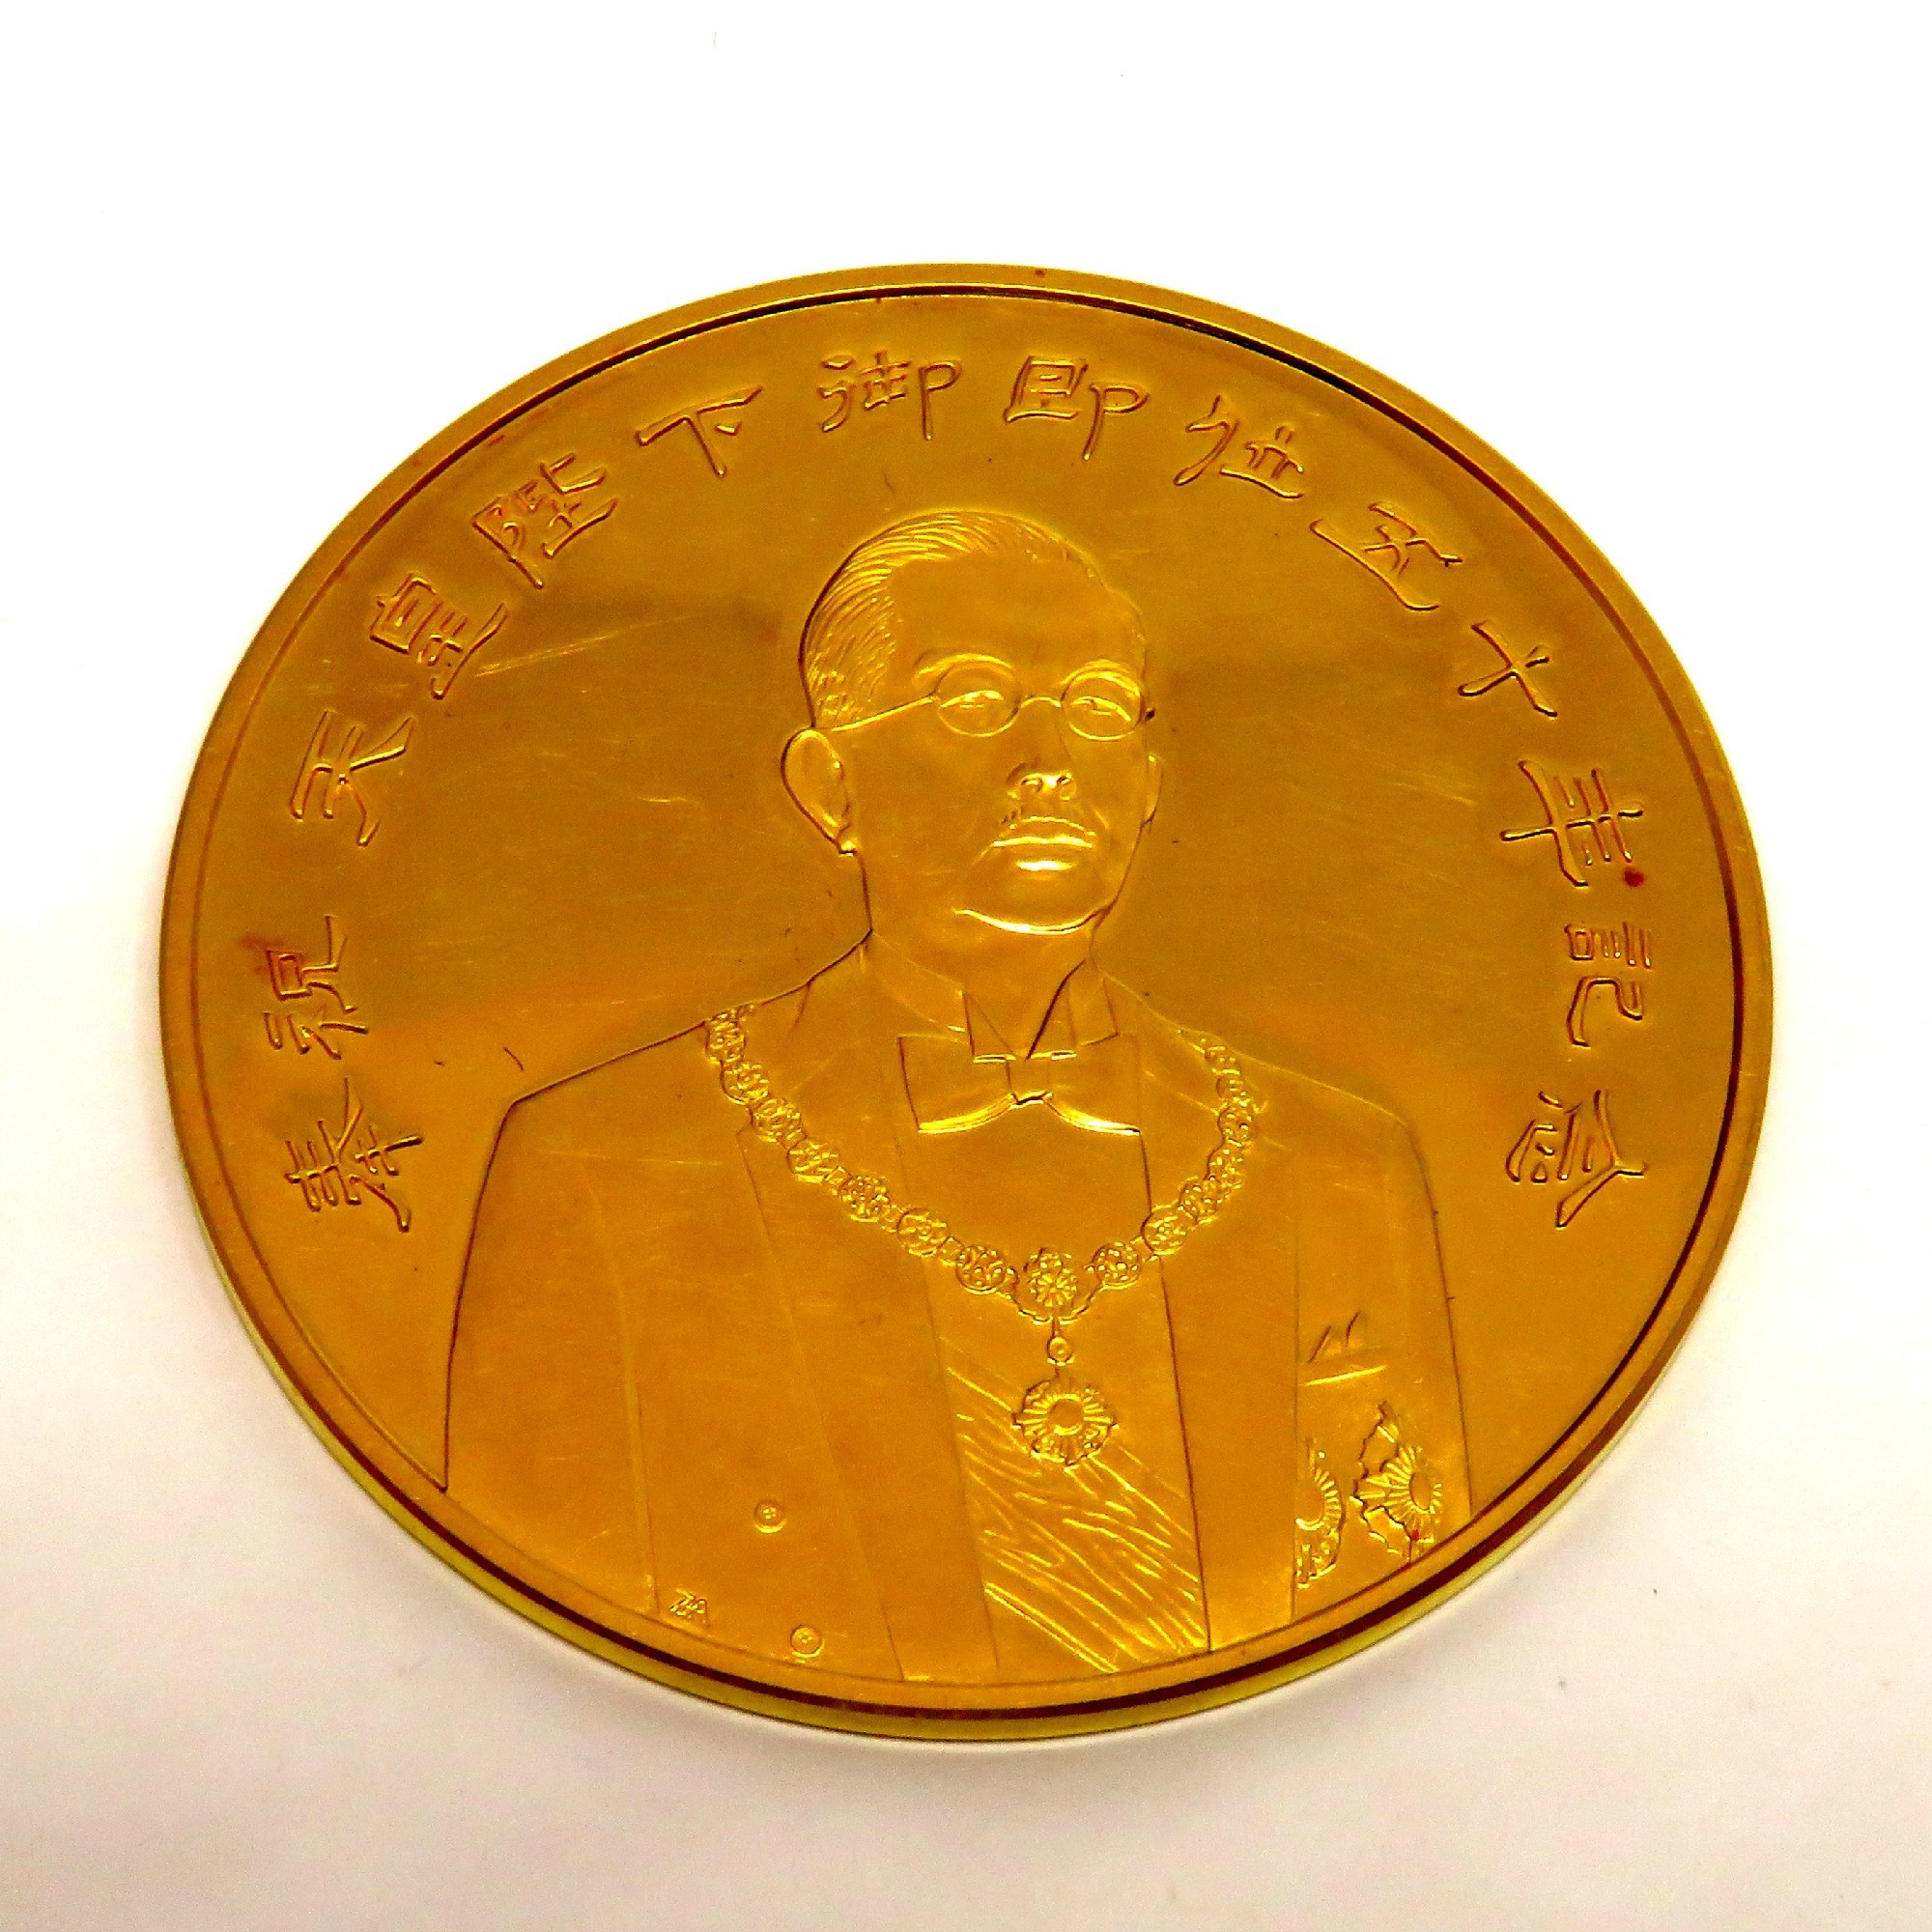 天皇陛下御即位50周年記念メダル - 旧貨幣/金貨/銀貨/記念硬貨